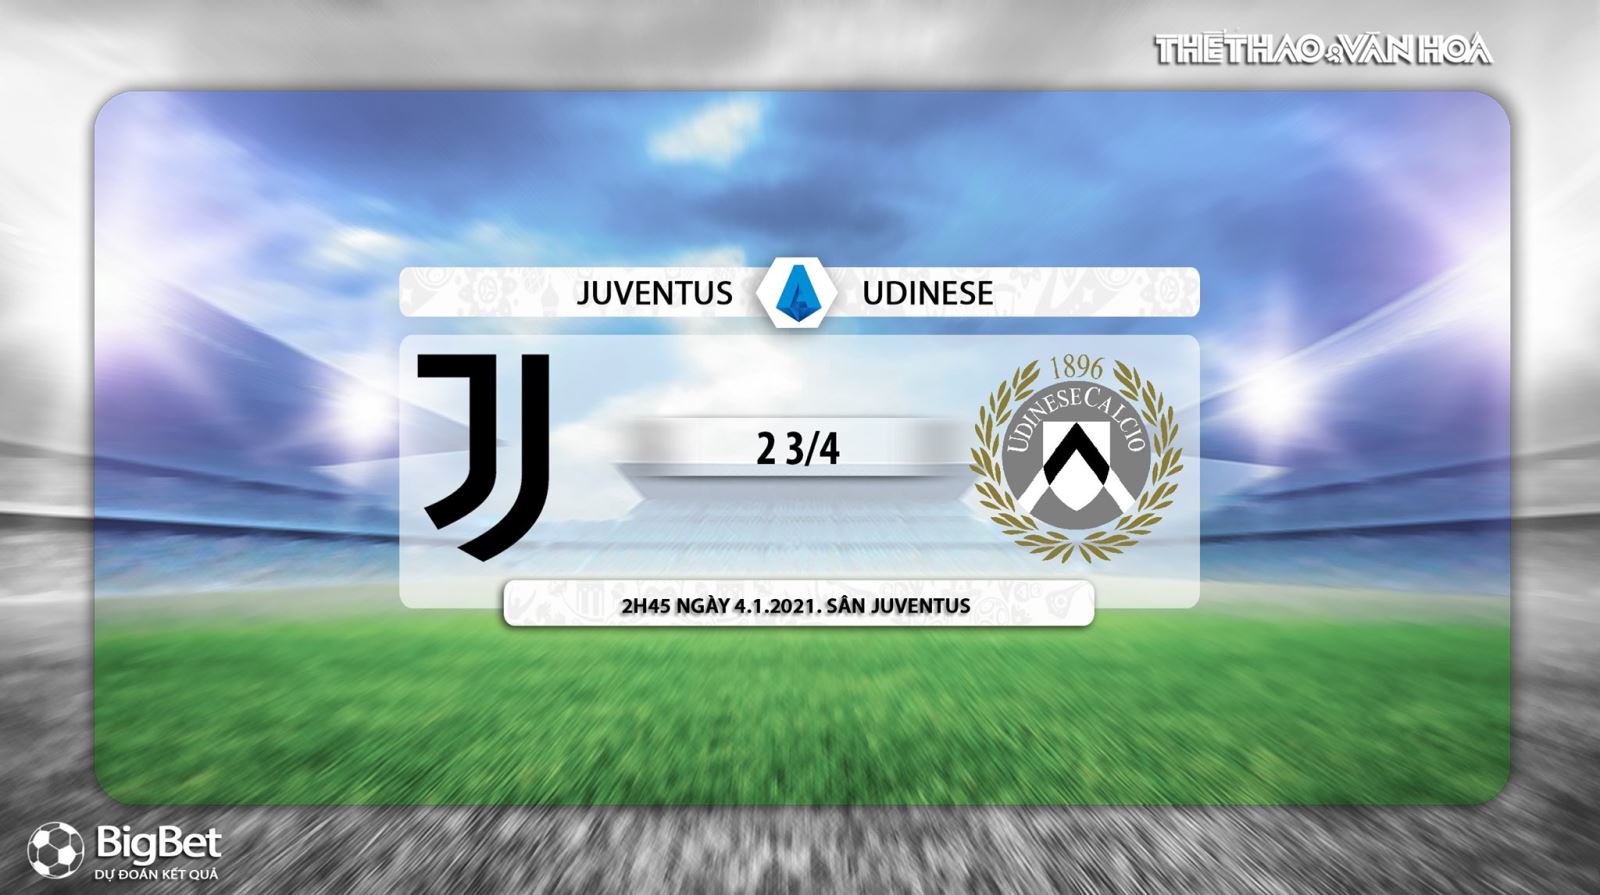 Keo nha cai, Nhận định kết quả, Juventus vs Udinese, Trực tiếp bóng đá Italia vòng 15, PFT Play, Trực tiếp Juventus vs Udinese, Kèo bóng đá Juventus vs Udinese